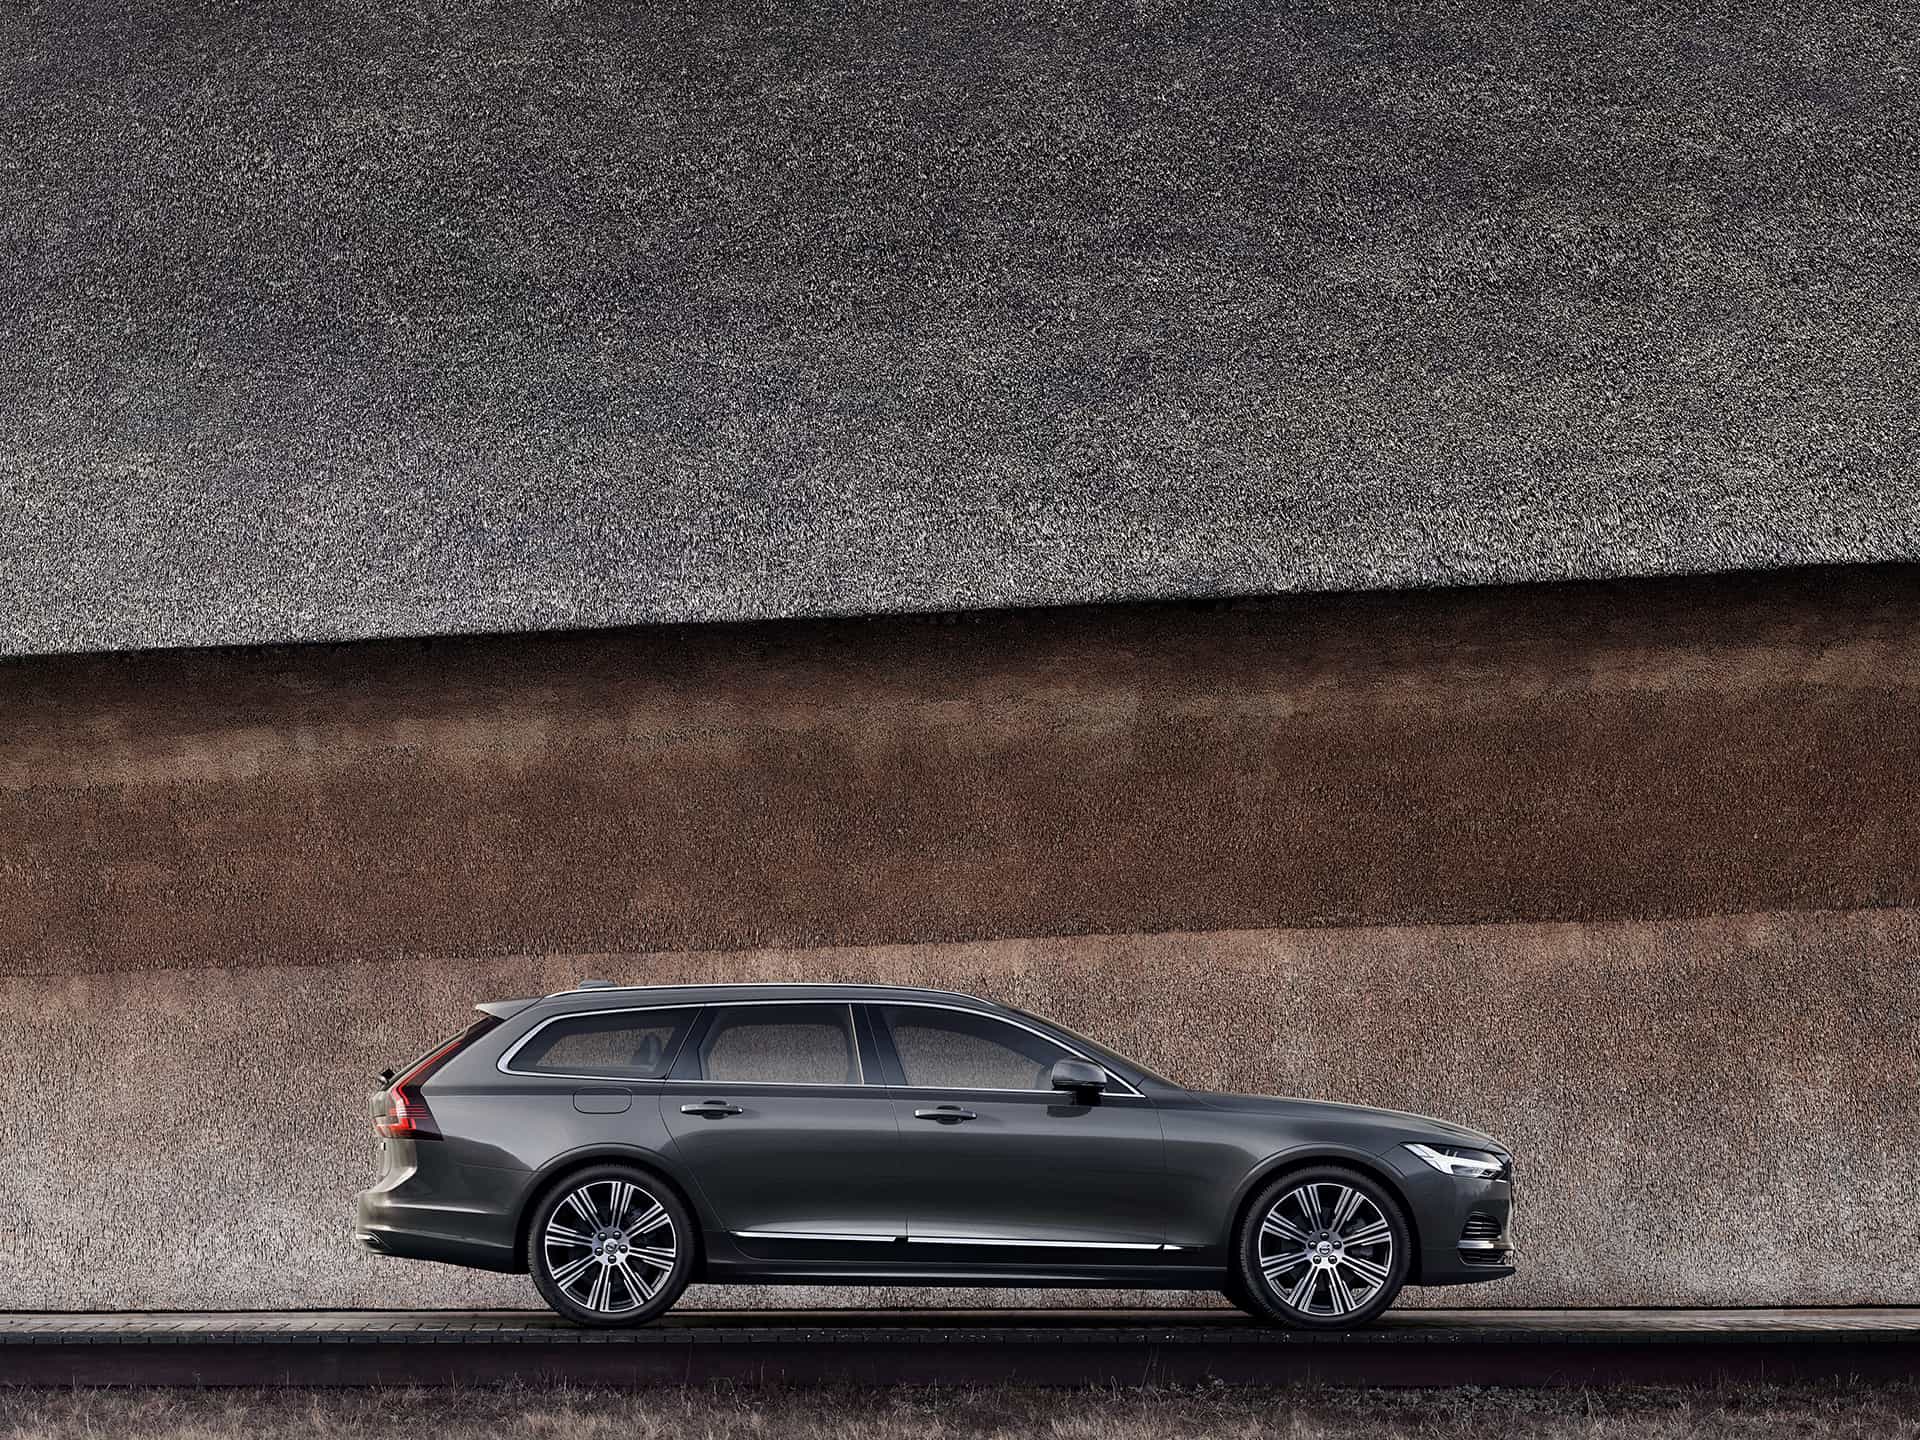 En mörkgrå Volvo V90 parkerad mot en vägg.